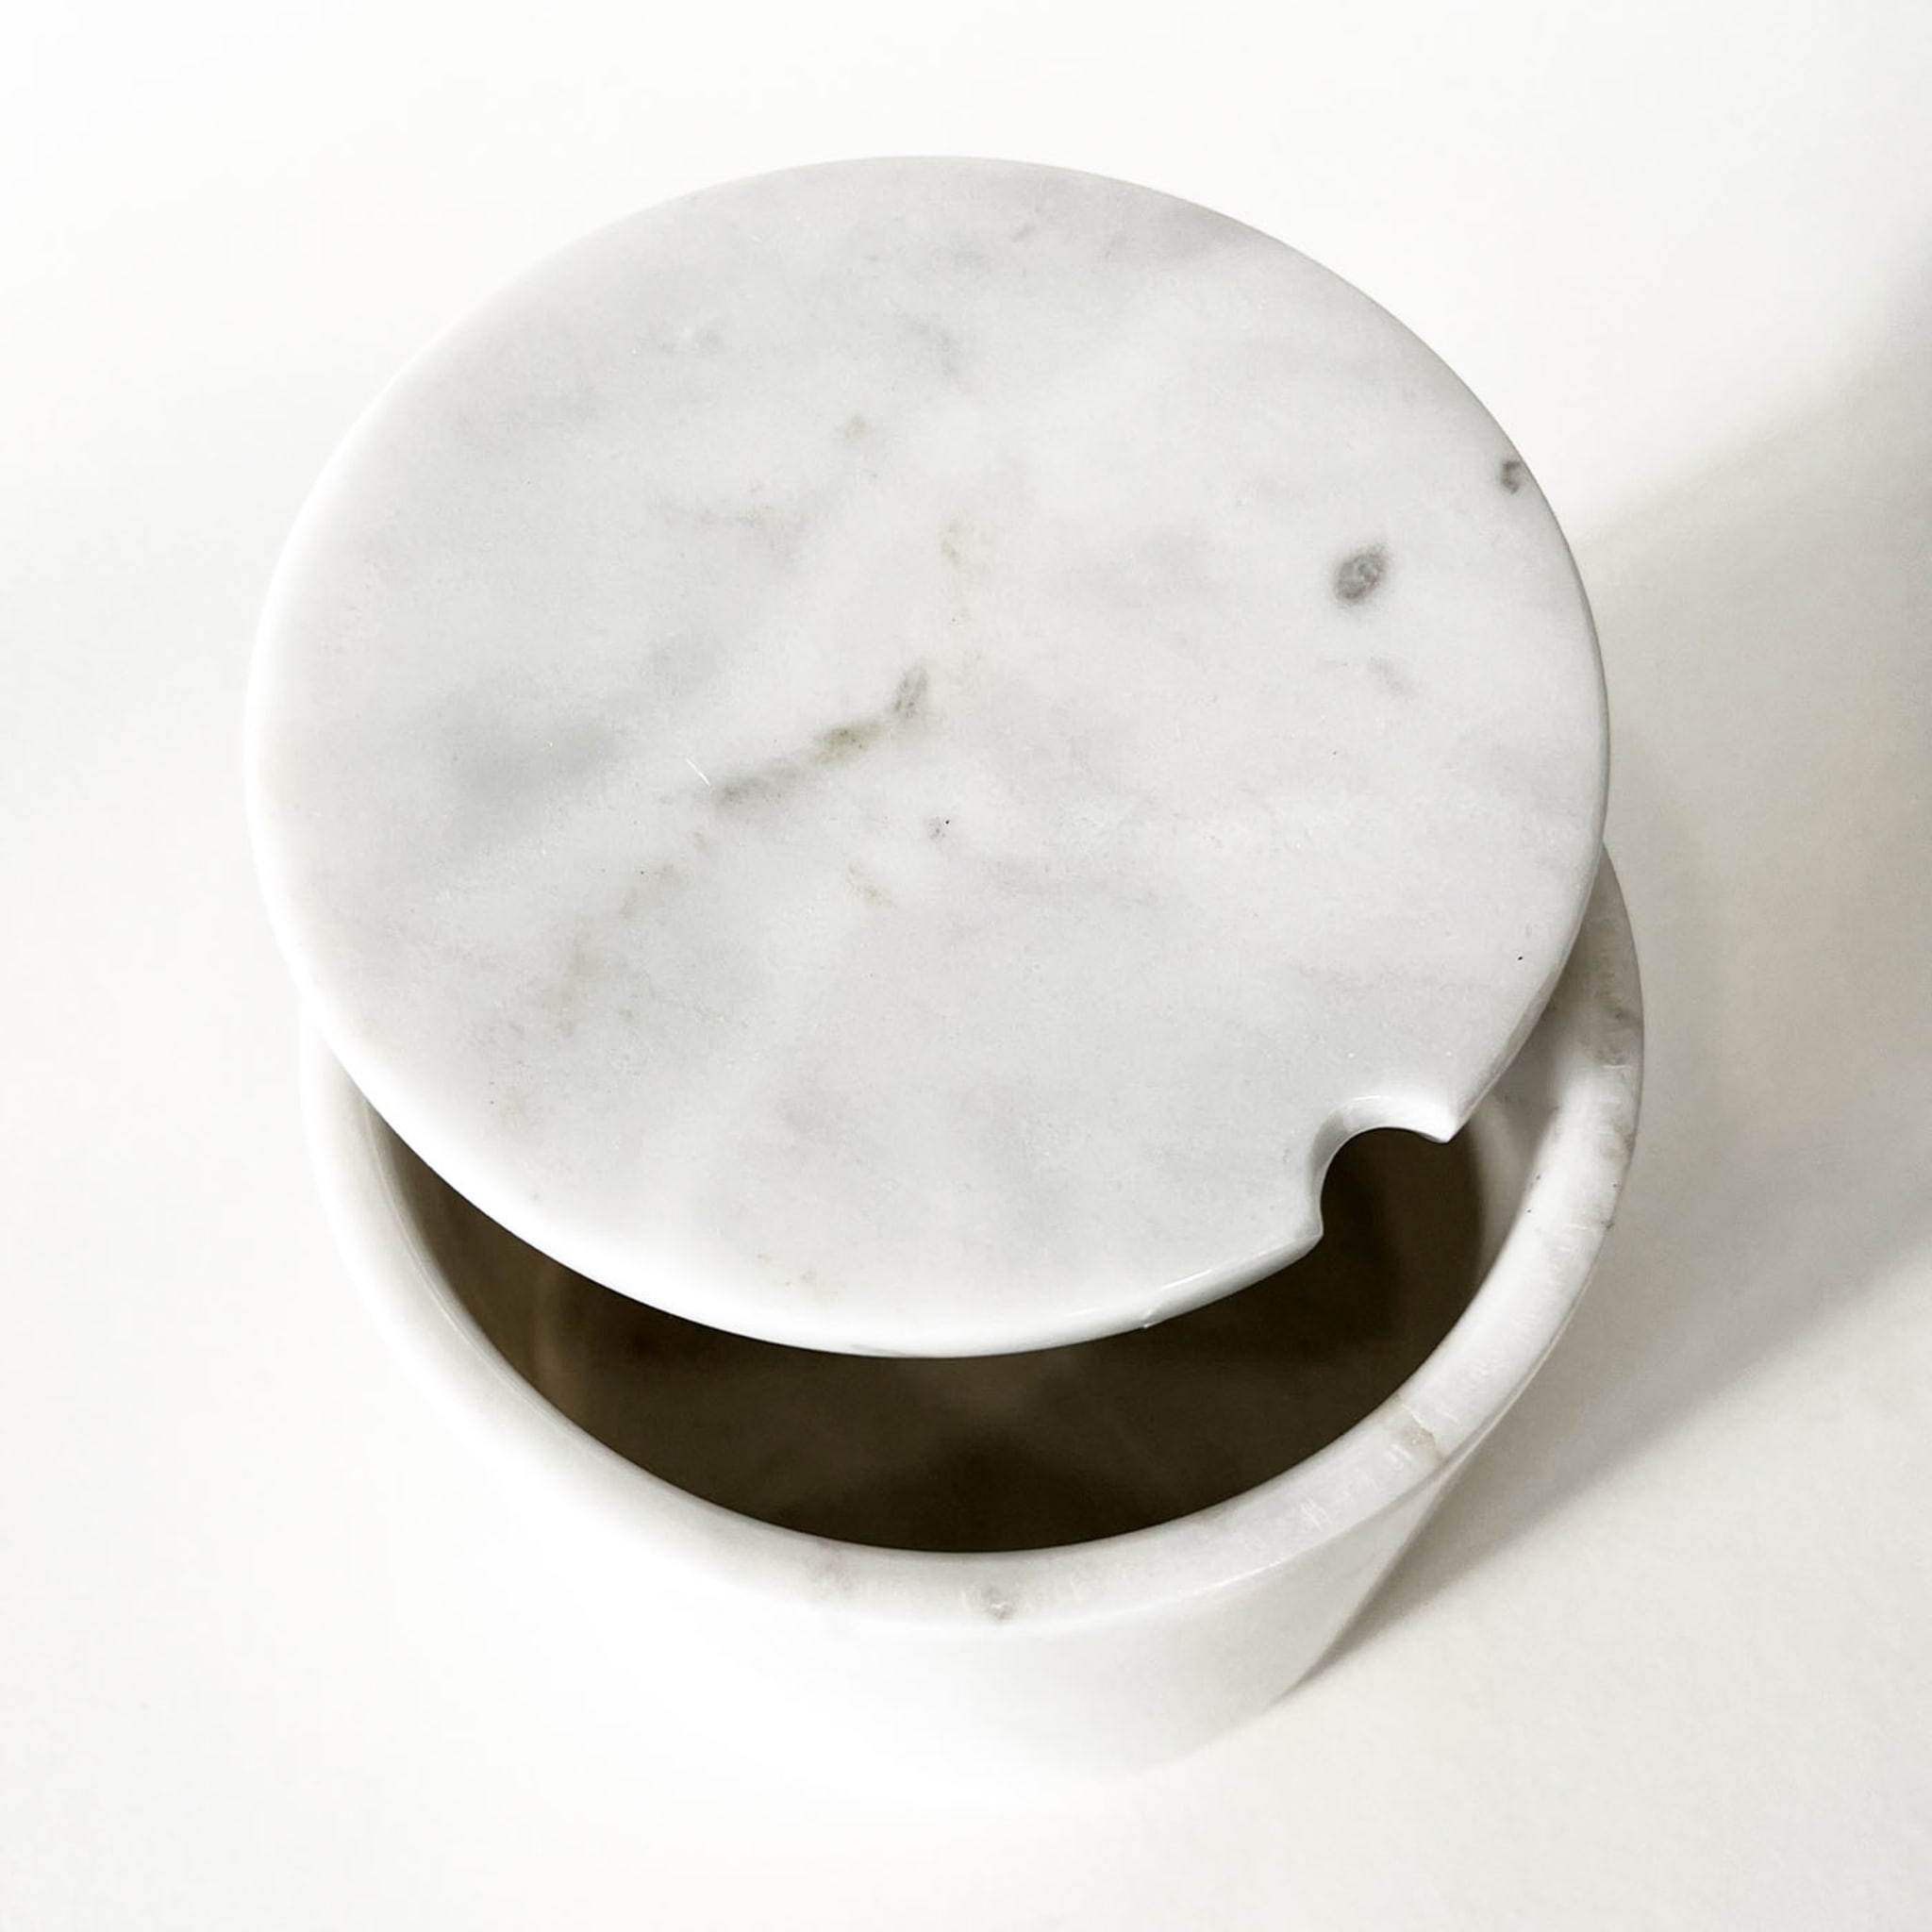 Sugar Moon Cylindrical Sugar Bowl by Raffaella Bardi - Alternative view 1